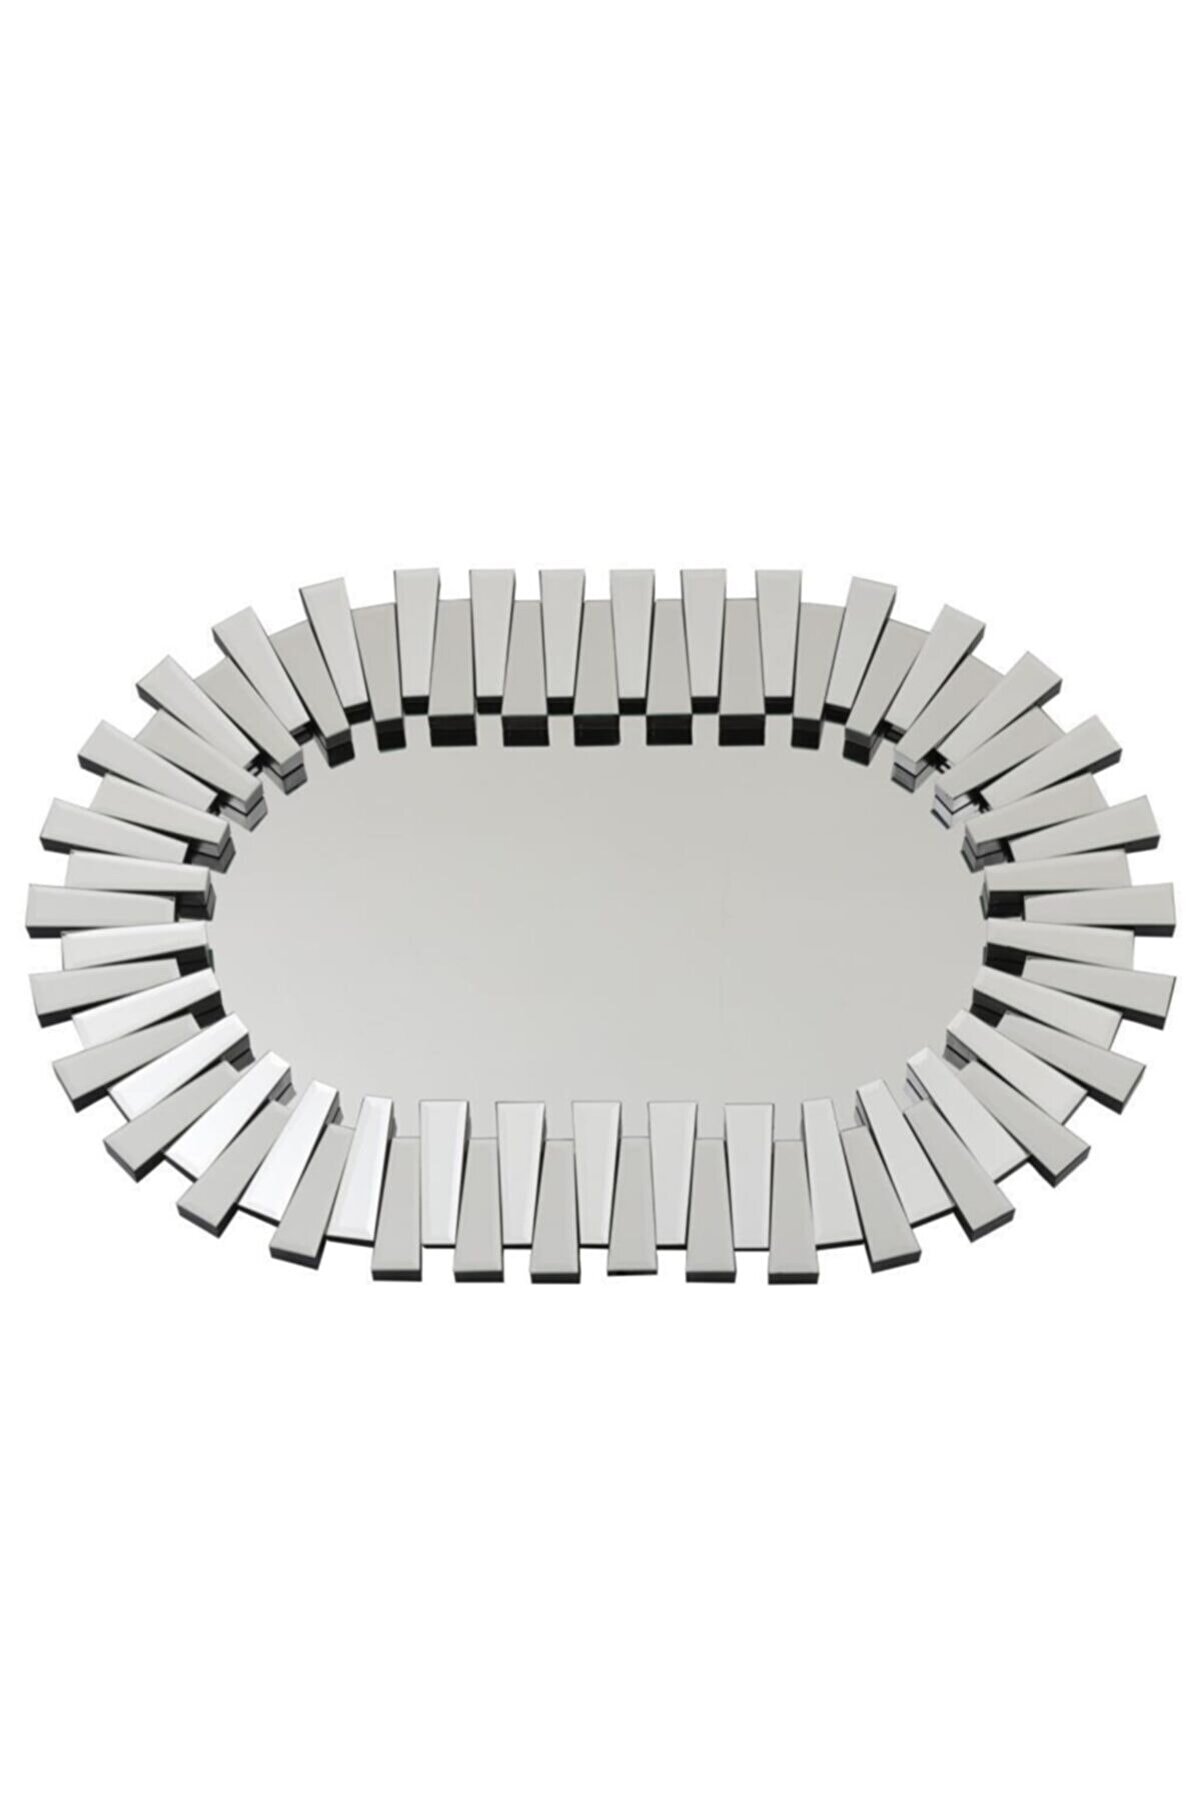 Fidex Home Lüks Piyano Modern Elips Büyük Ayna 118cm Gümüş